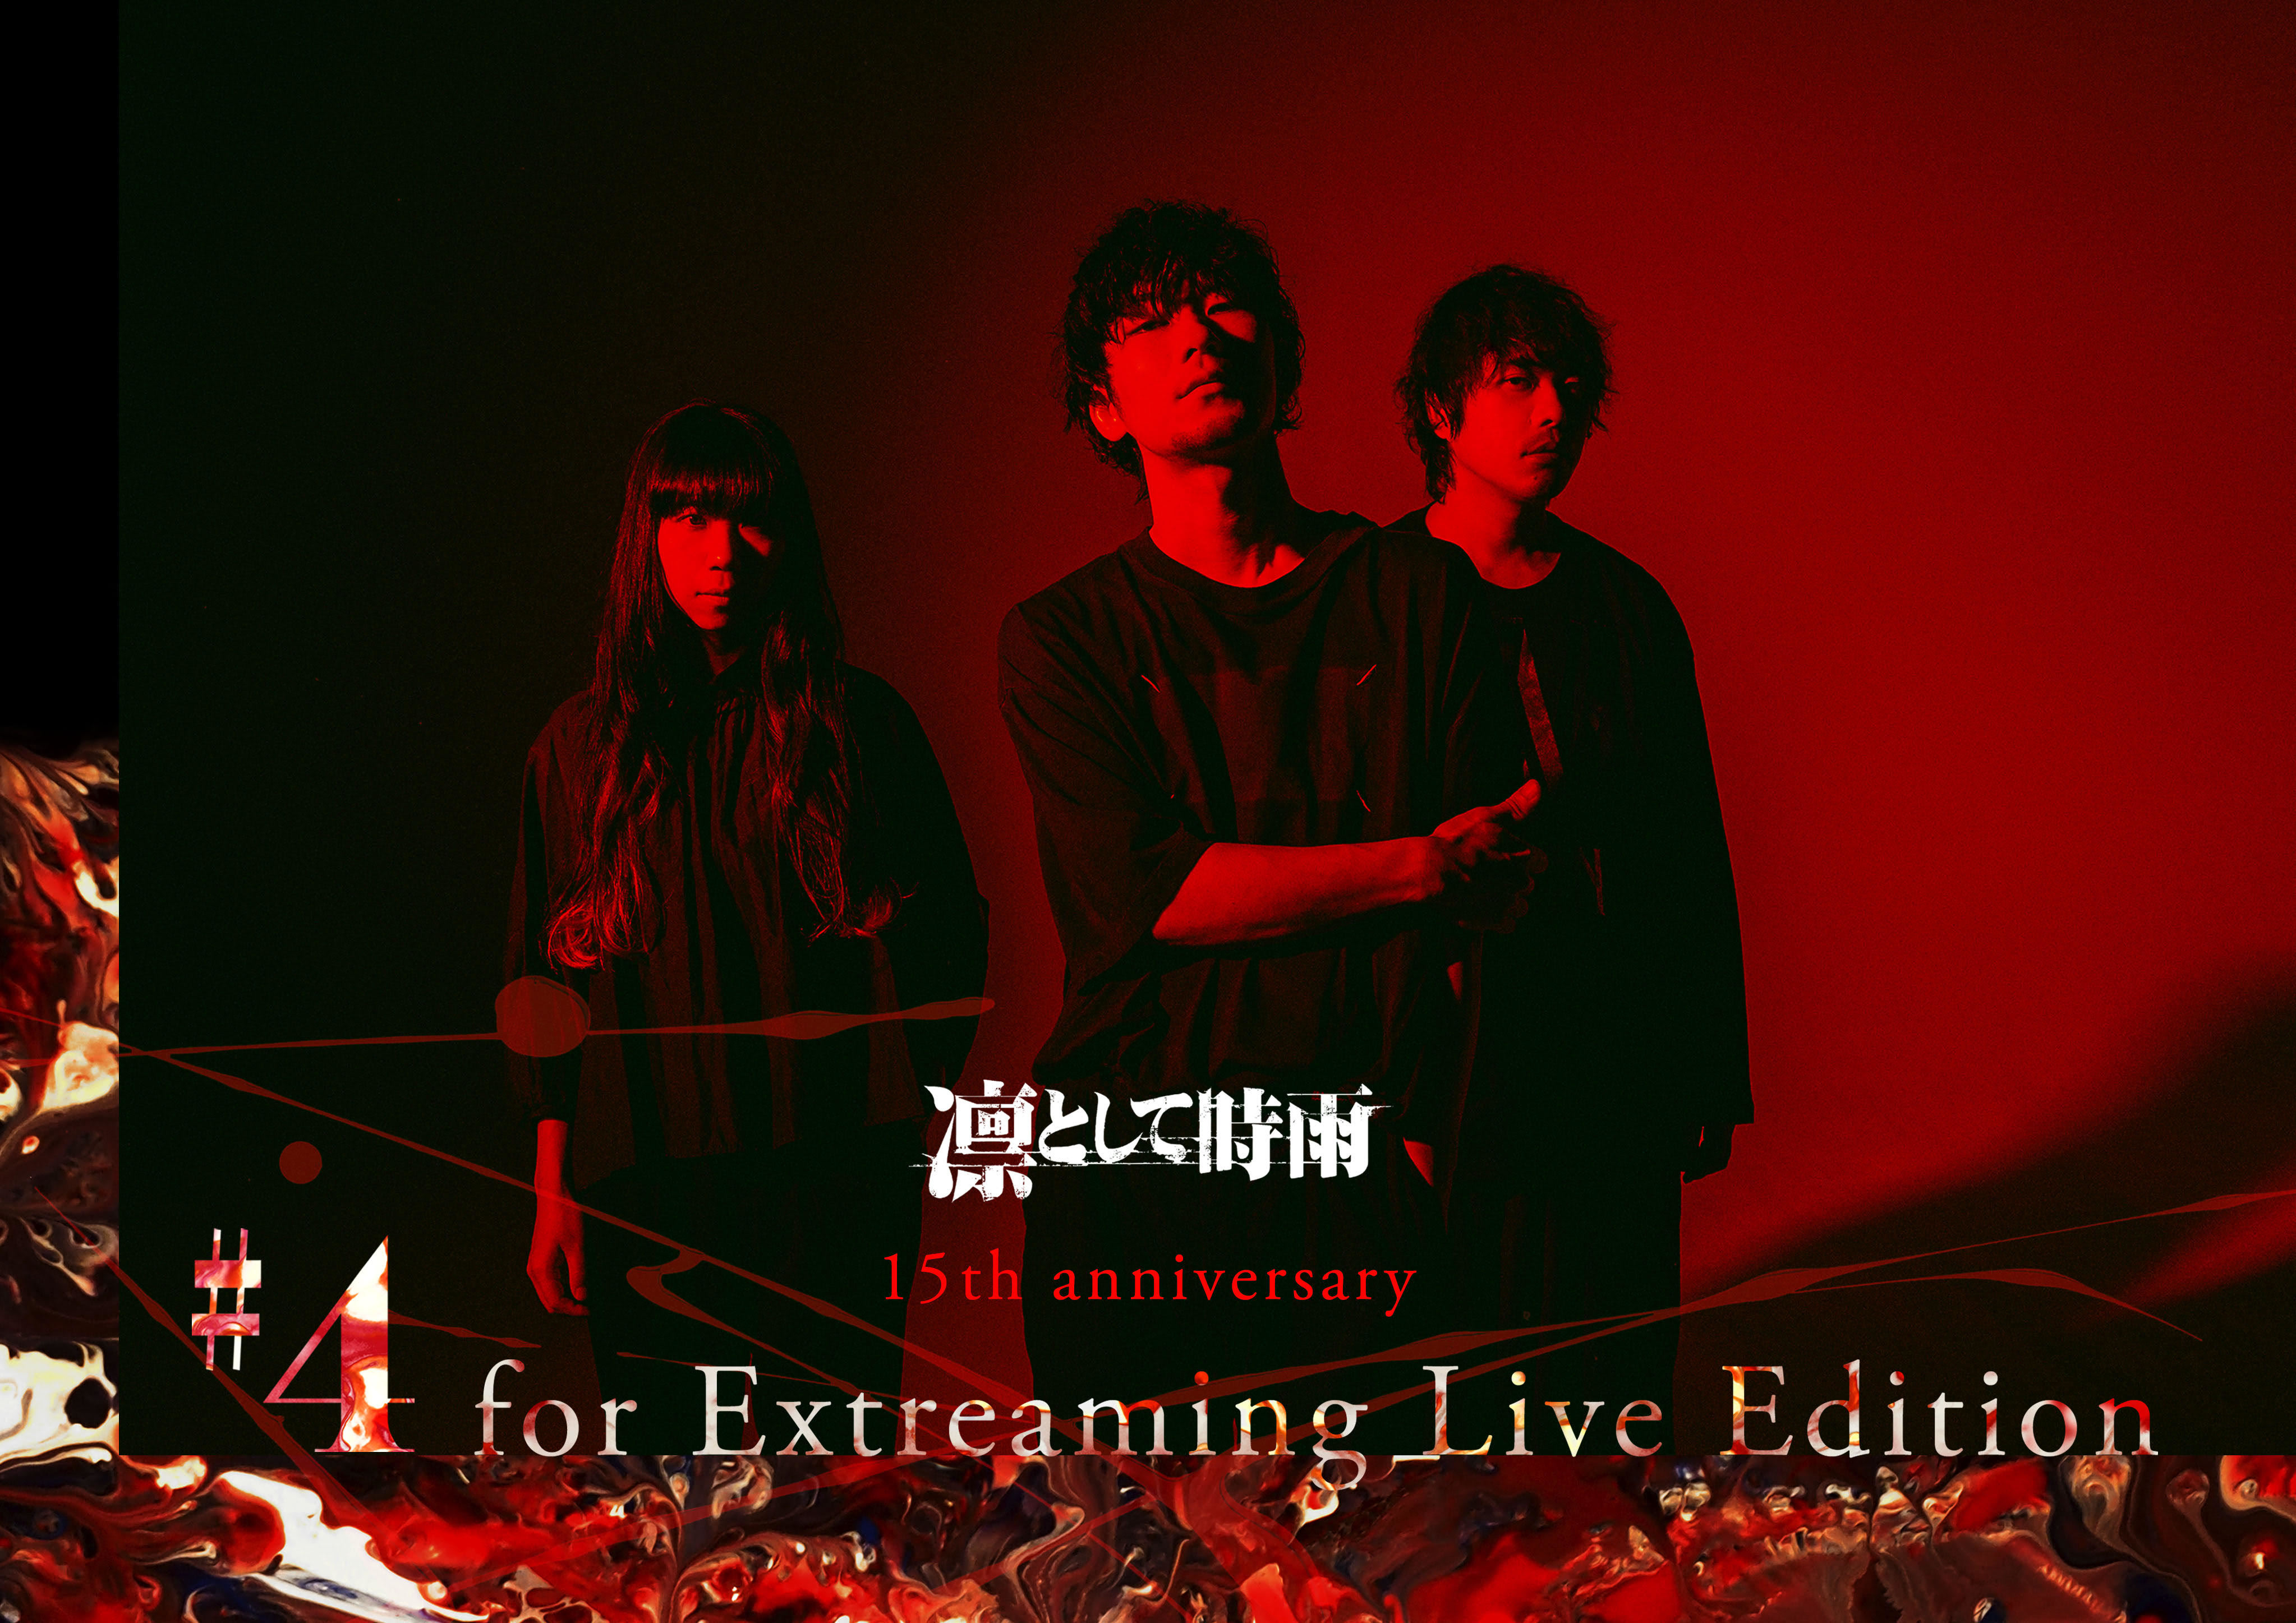 『凛として時雨 15th anniversary #4 for Extreaming Live Edition』フライヤー